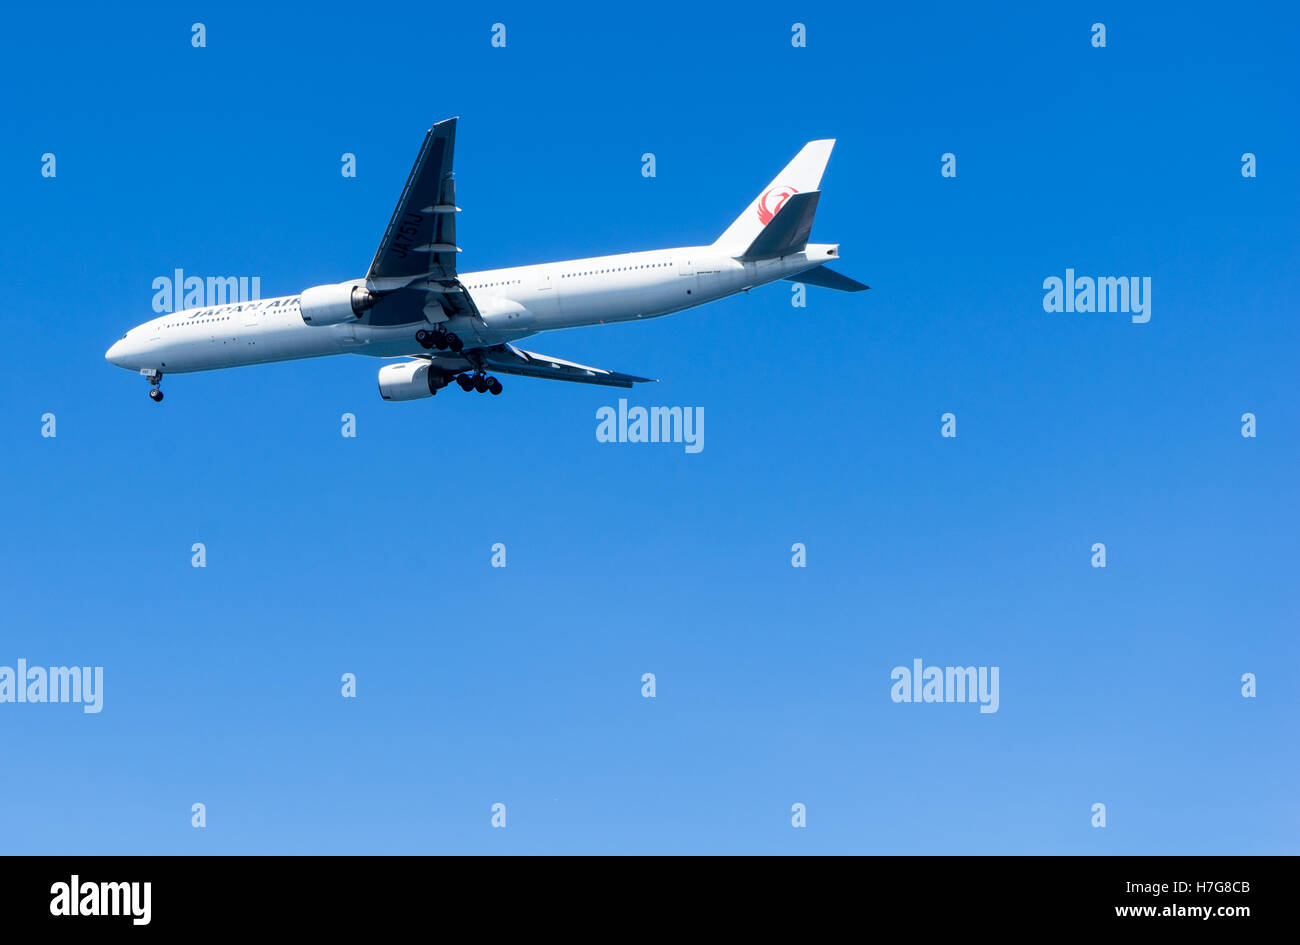 Japan Air, flight on a clear sky Stock Photo